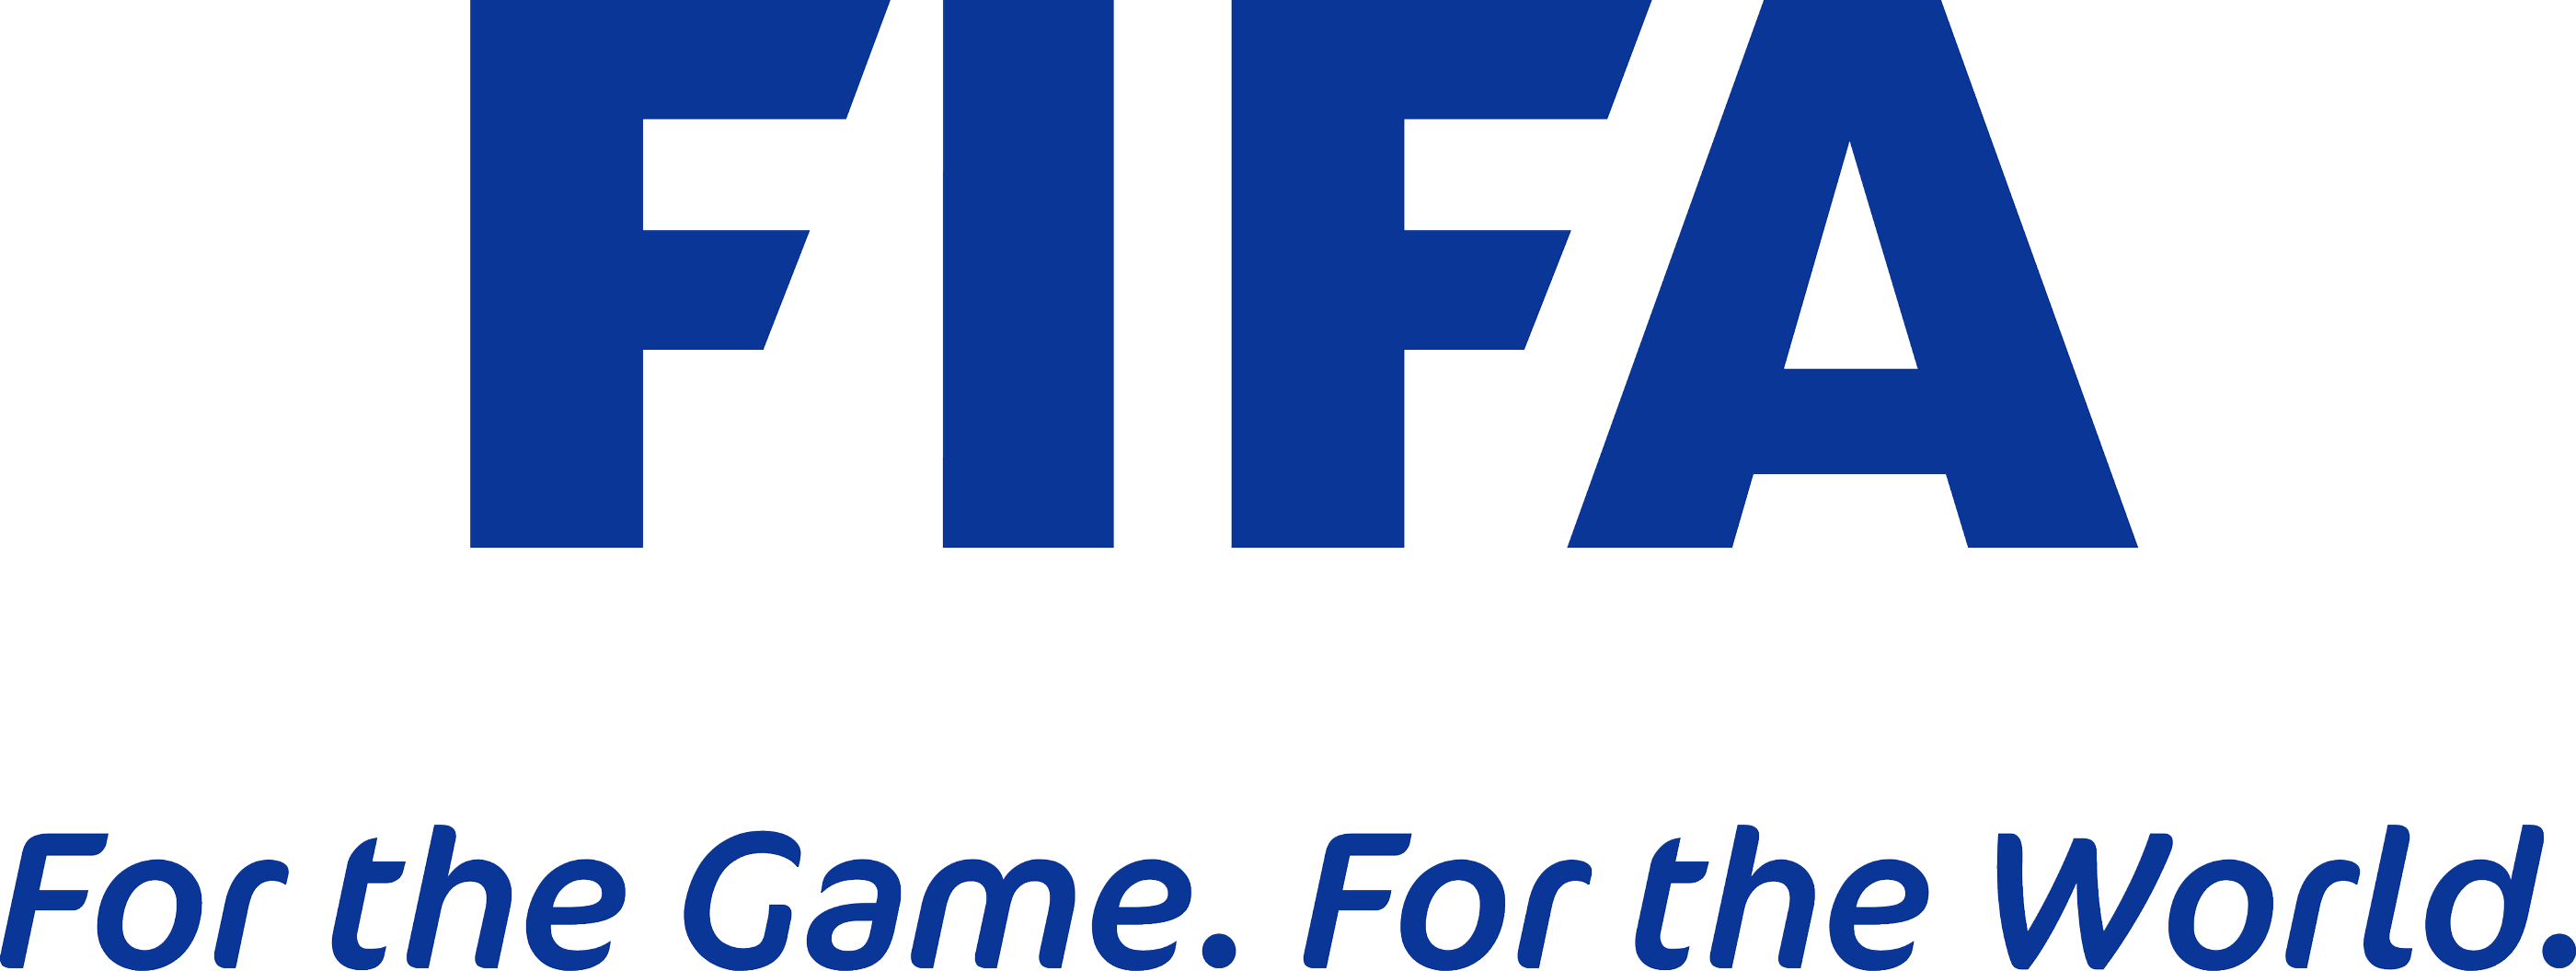 FIFA Logo [fifa.com] png